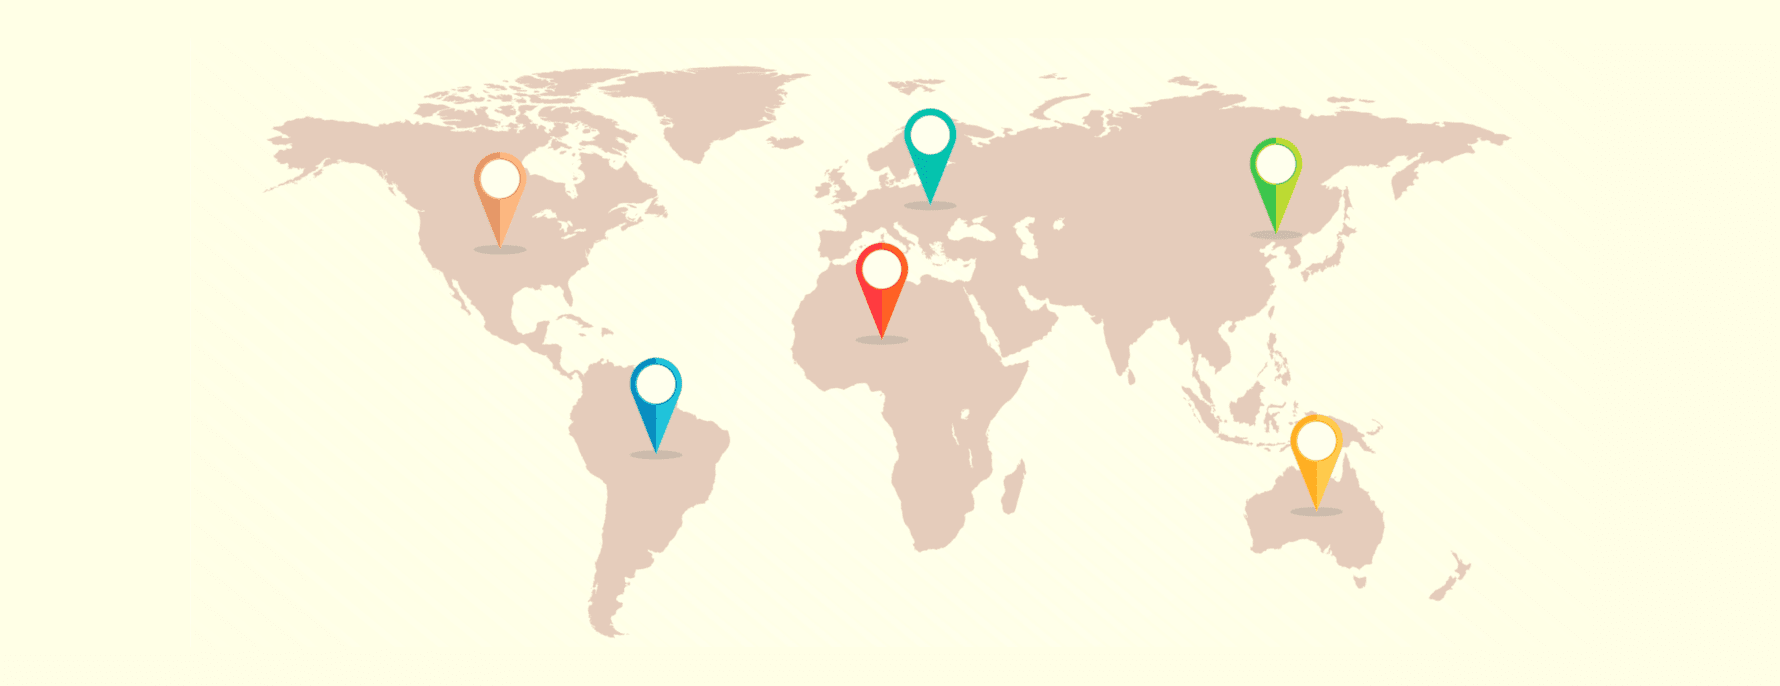 Et verdenskort, der viser forskellige VPN-jurisdiktioner